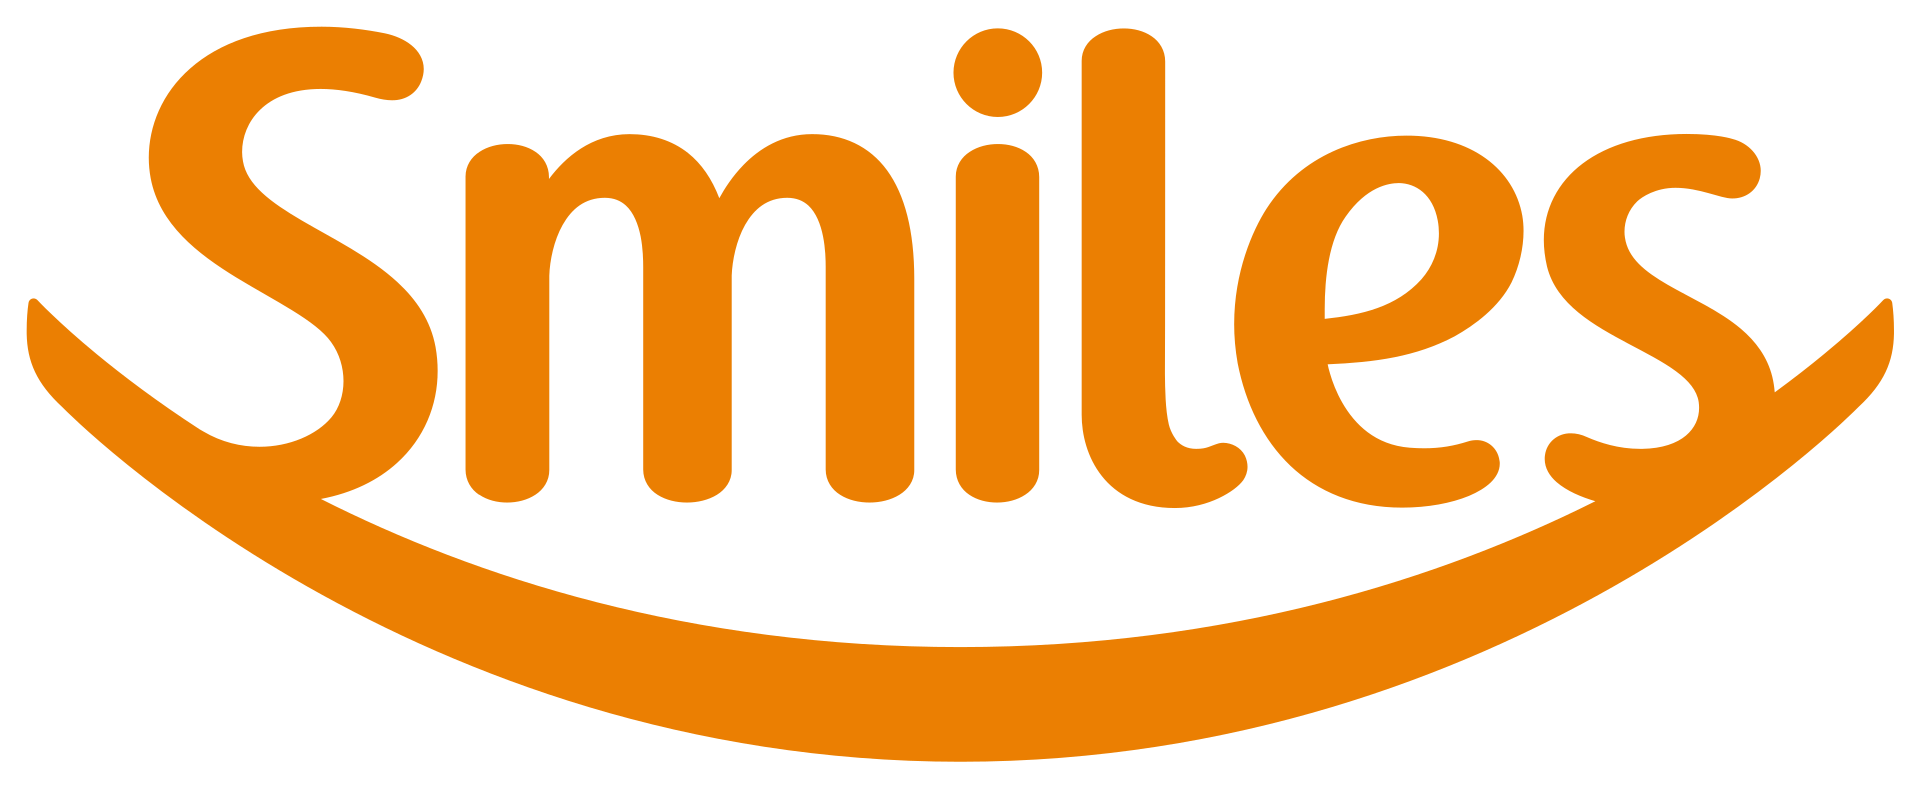 Smiles